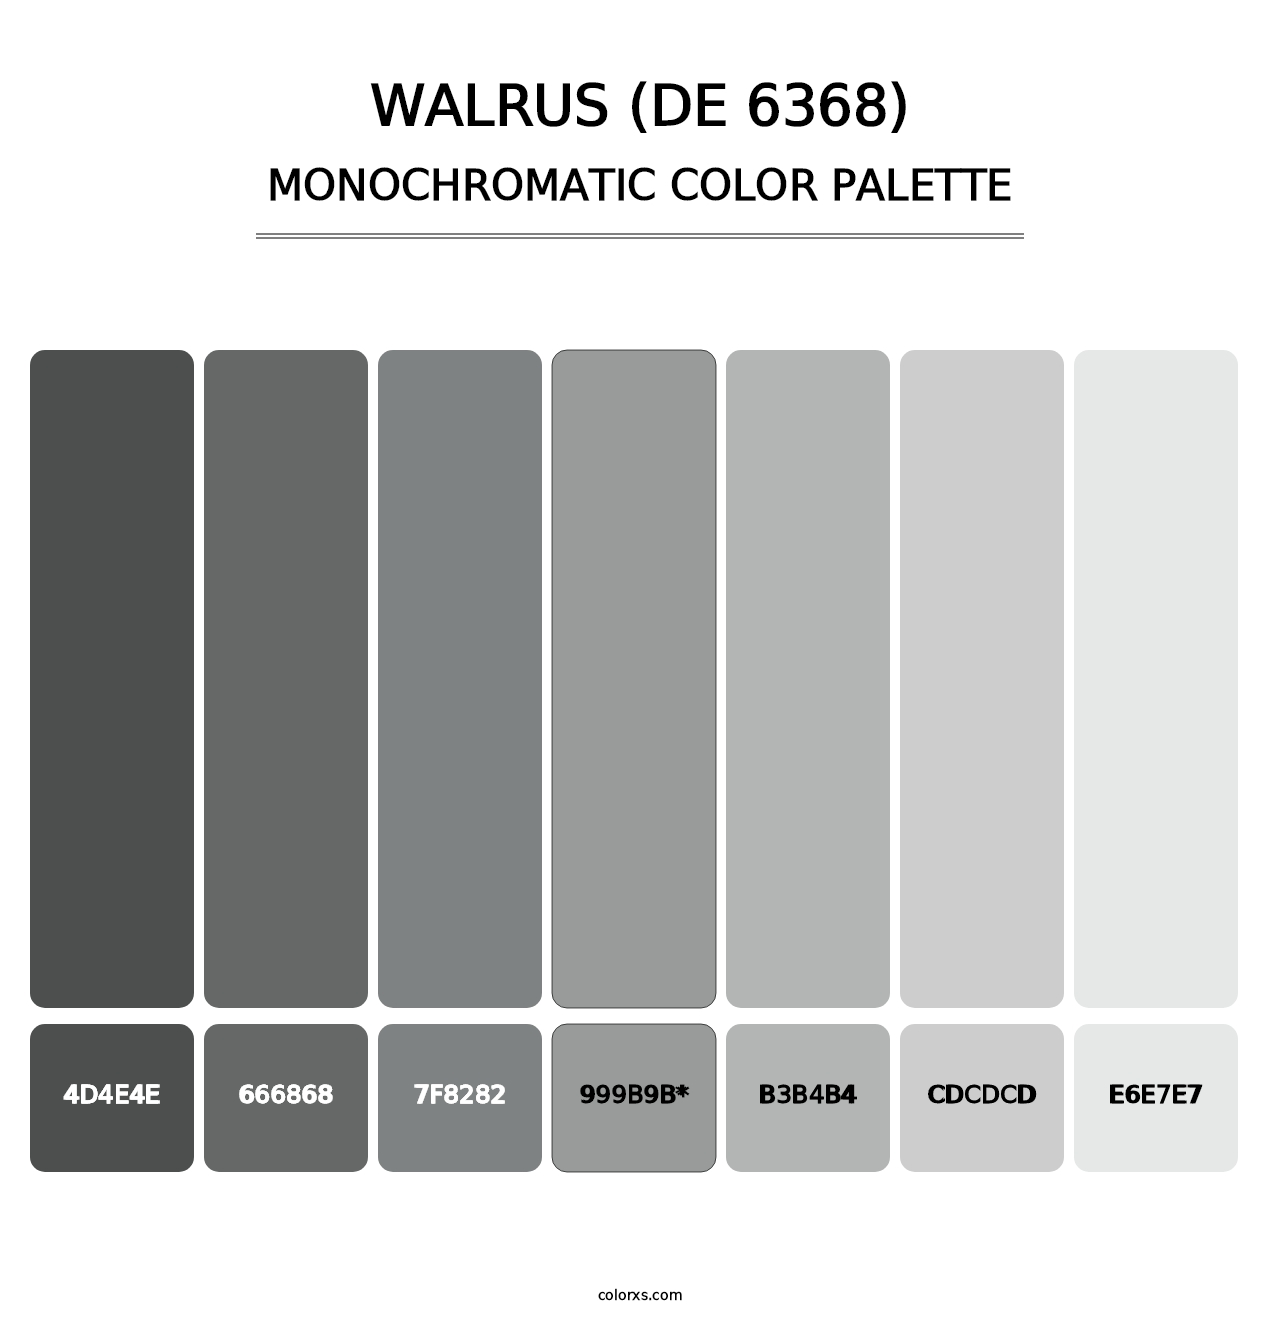 Walrus (DE 6368) - Monochromatic Color Palette